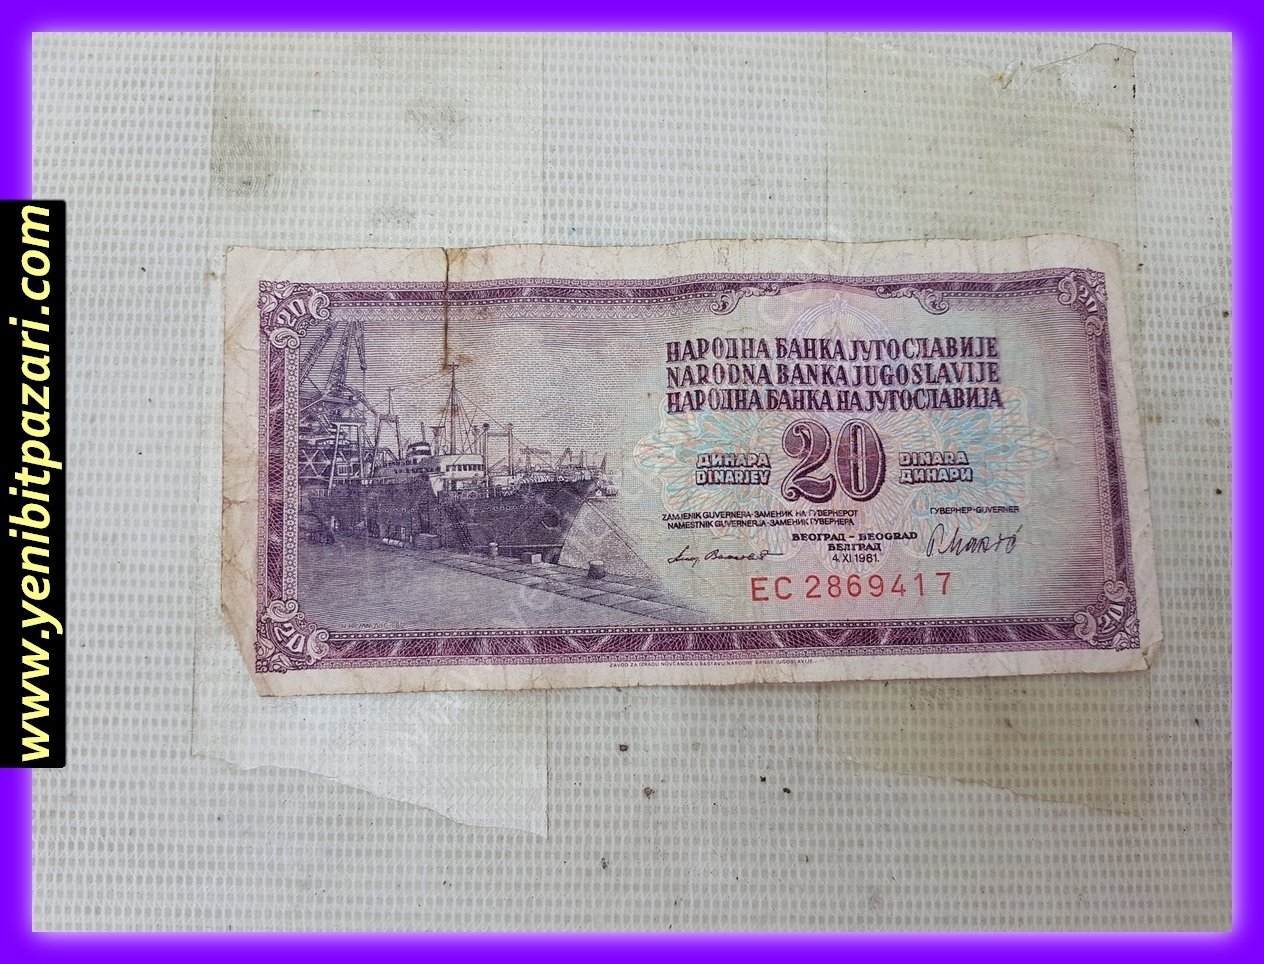 20 yirmi YUGOSLAVYA dinarı dinar 1981 orjinal antika tarihi eski para çeşitleri kağıt paralar kolesksiyonluk nostalji